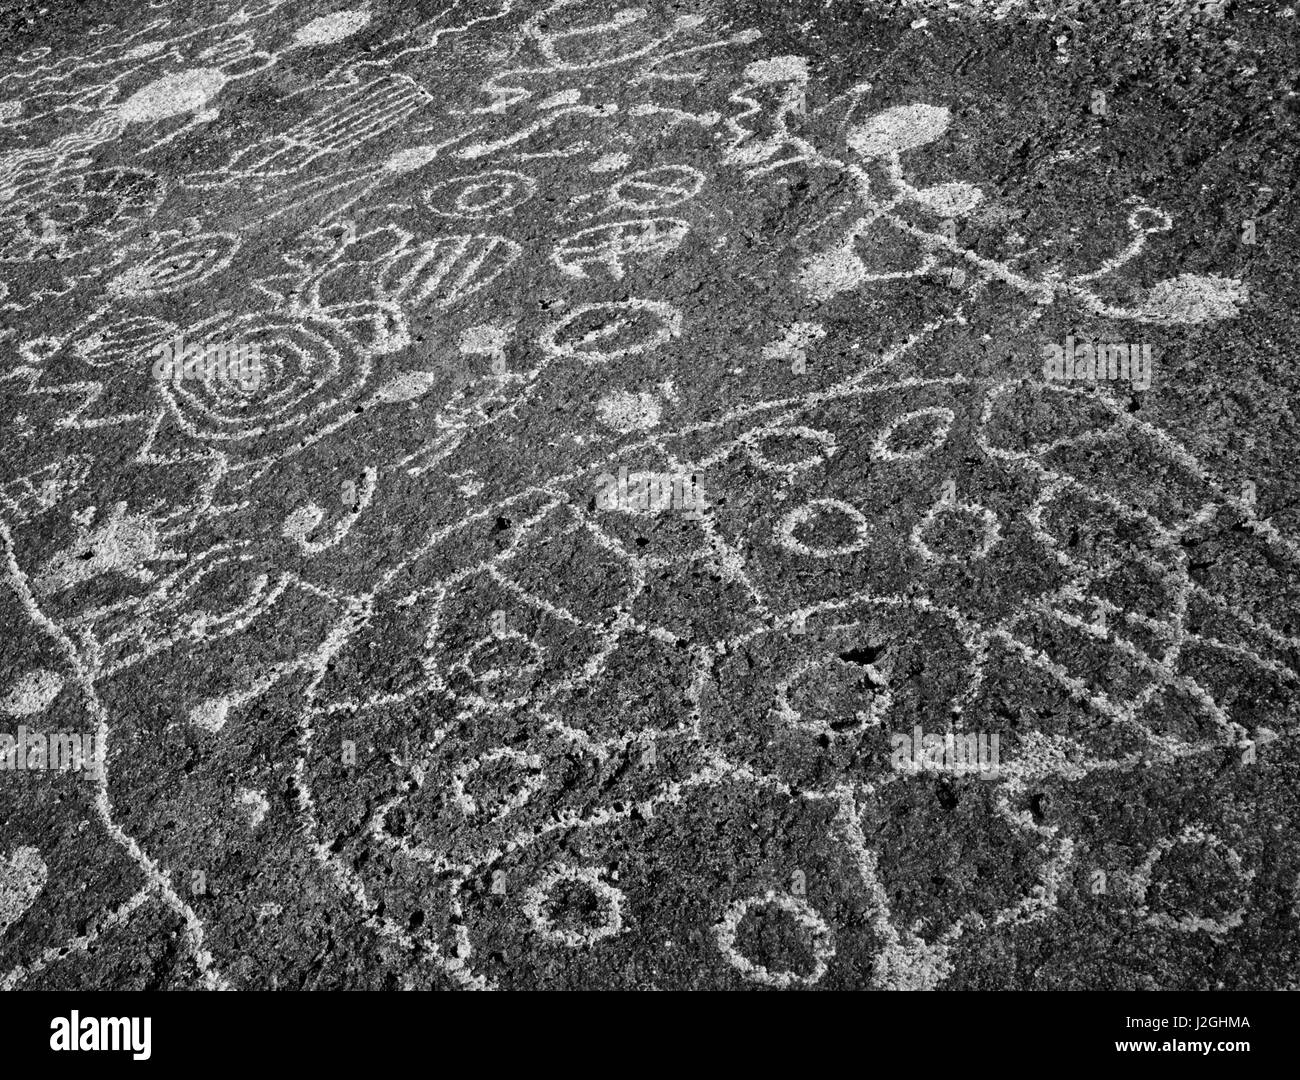 USA, California, Bischof. Petroglyphen in Felswand. Kredit als: Dennis Flaherty / Jaynes Galerie / DanitaDelimont.com (großformatige Größen erhältlich) Stockfoto